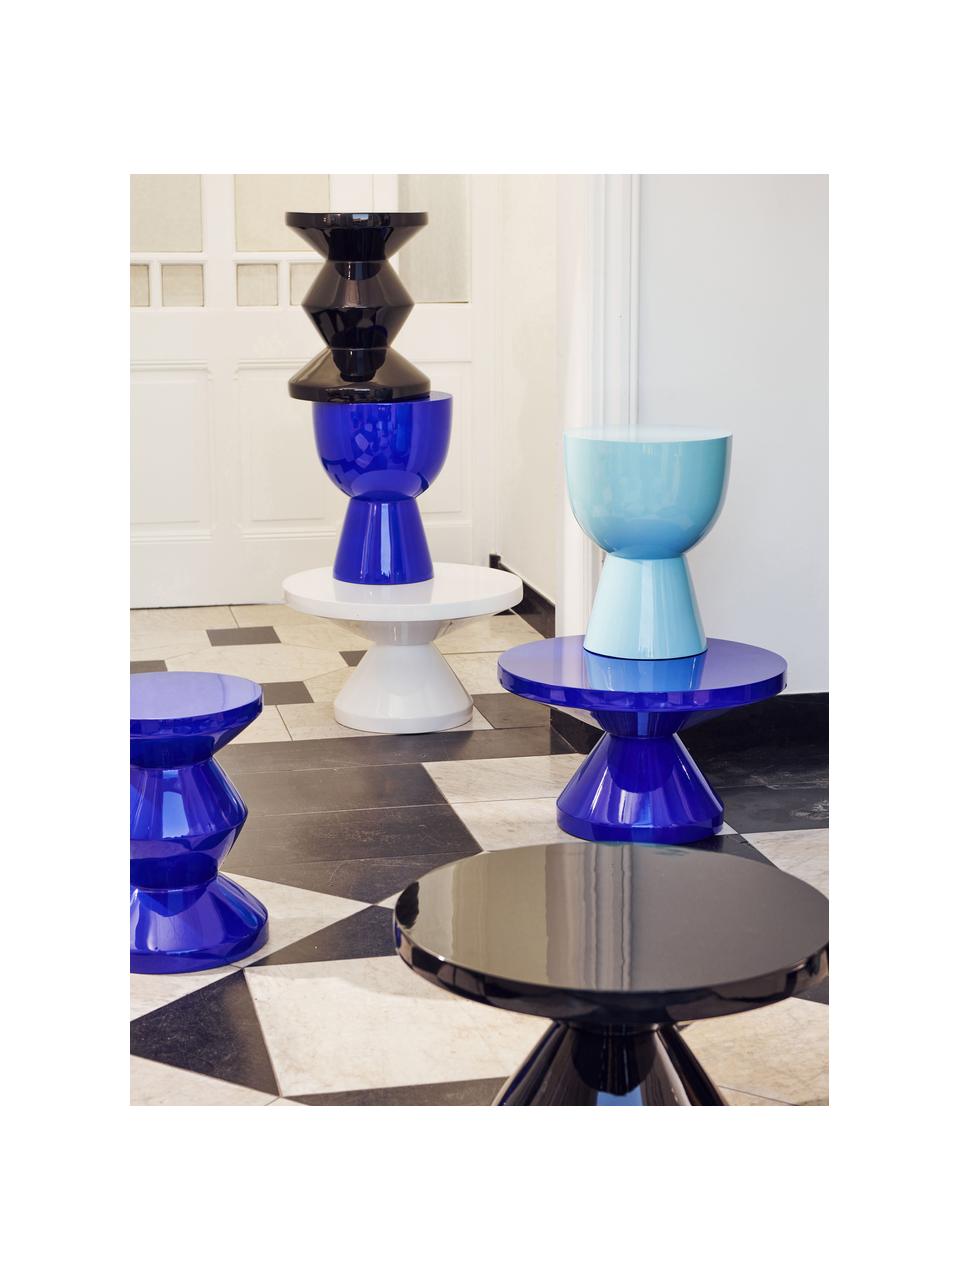 Okrúhly konferenčný stolík Zig Zag, Plast, lakovaný, Kráľovská modrá, Ø 60 cm